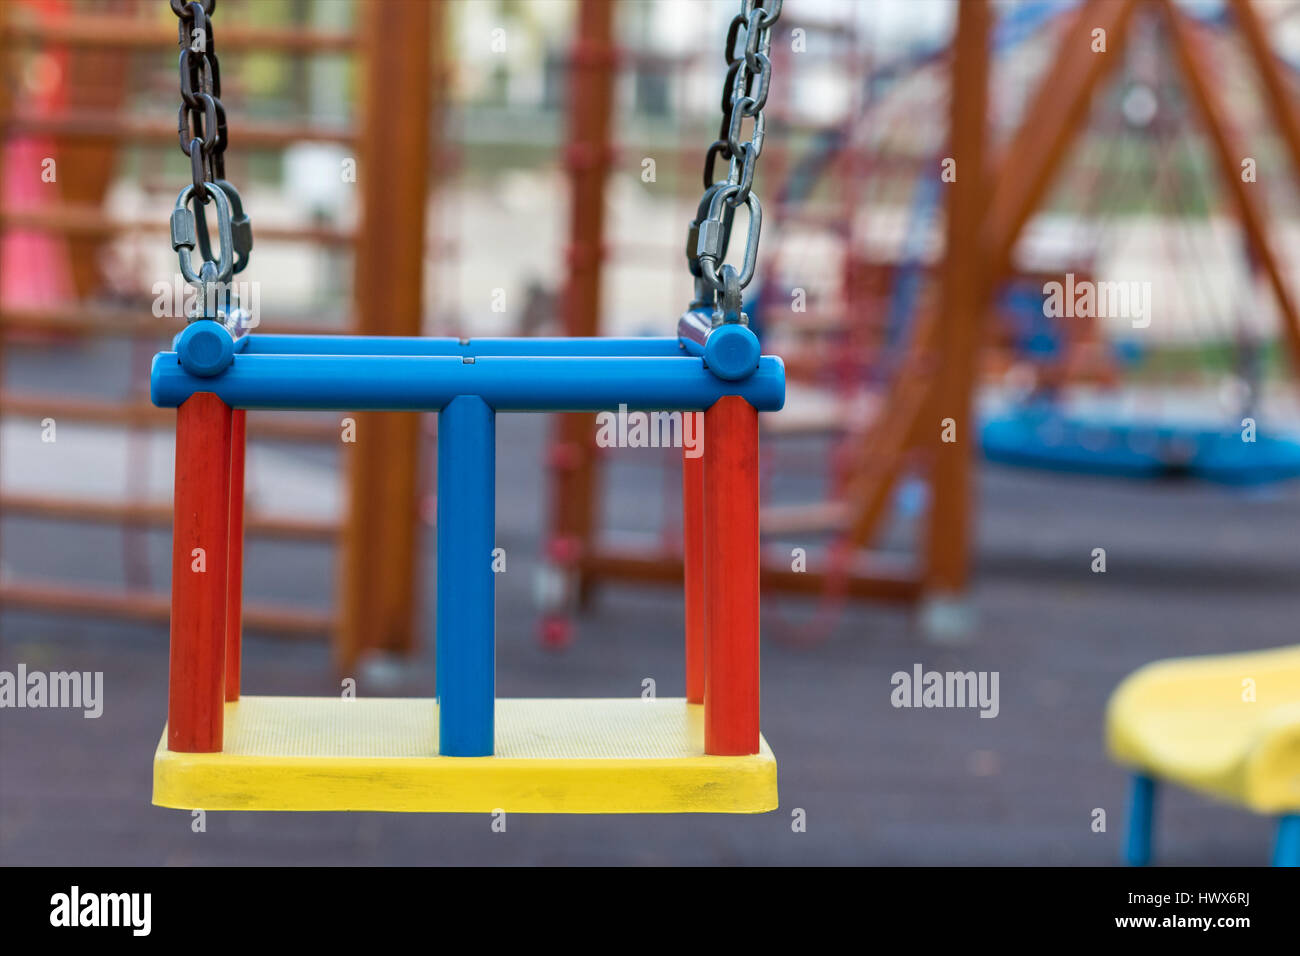 Swing in children's playground Stock Photo